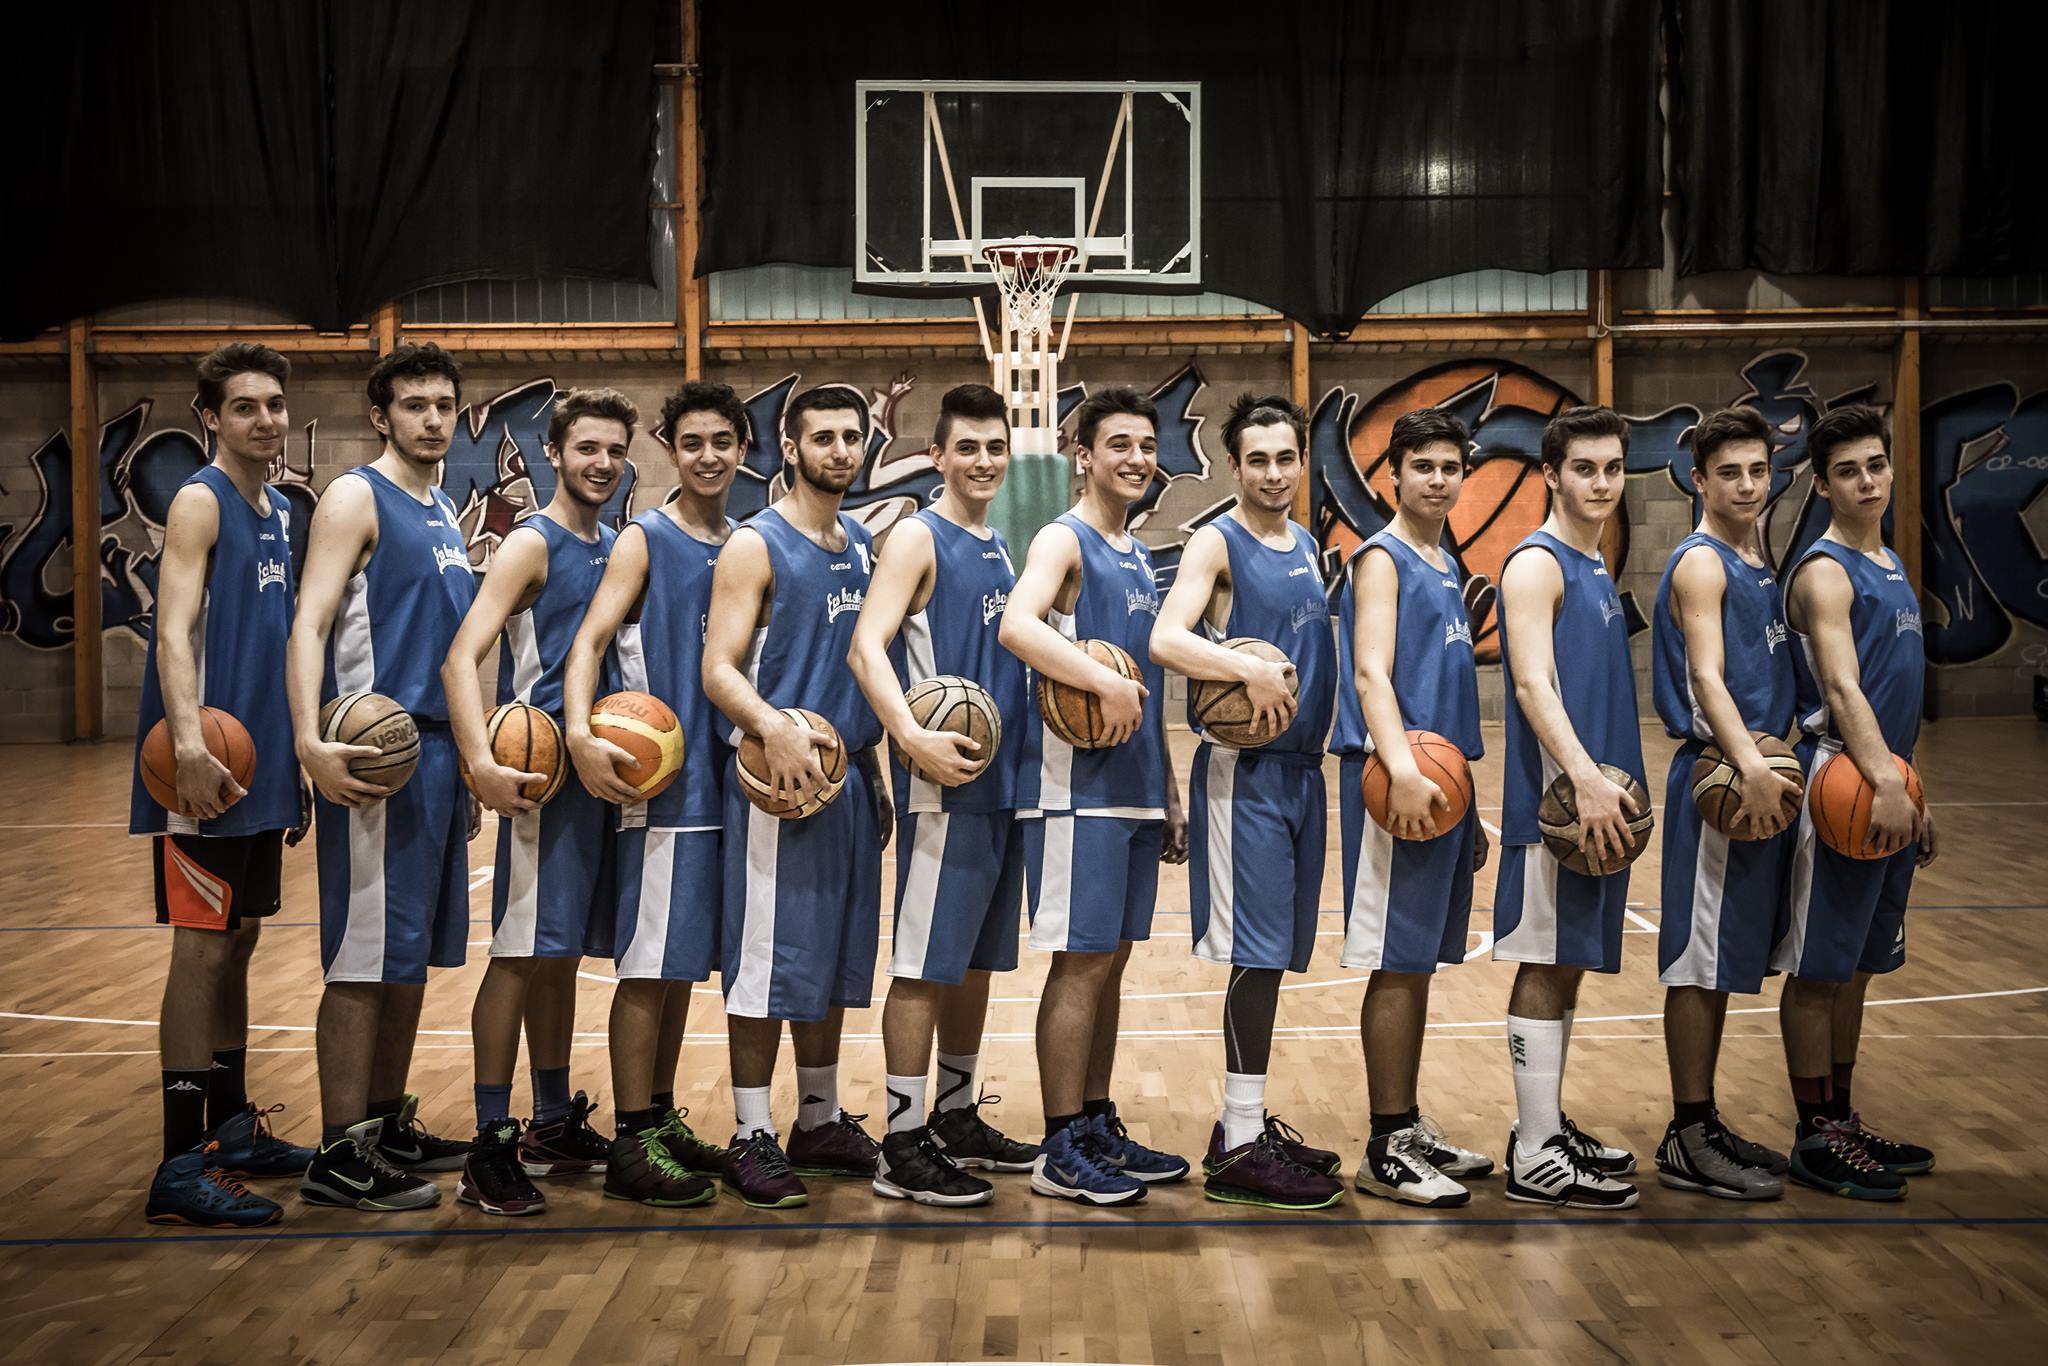 L'ECS Basket Crescentino è una società sportiva di pallacanestro